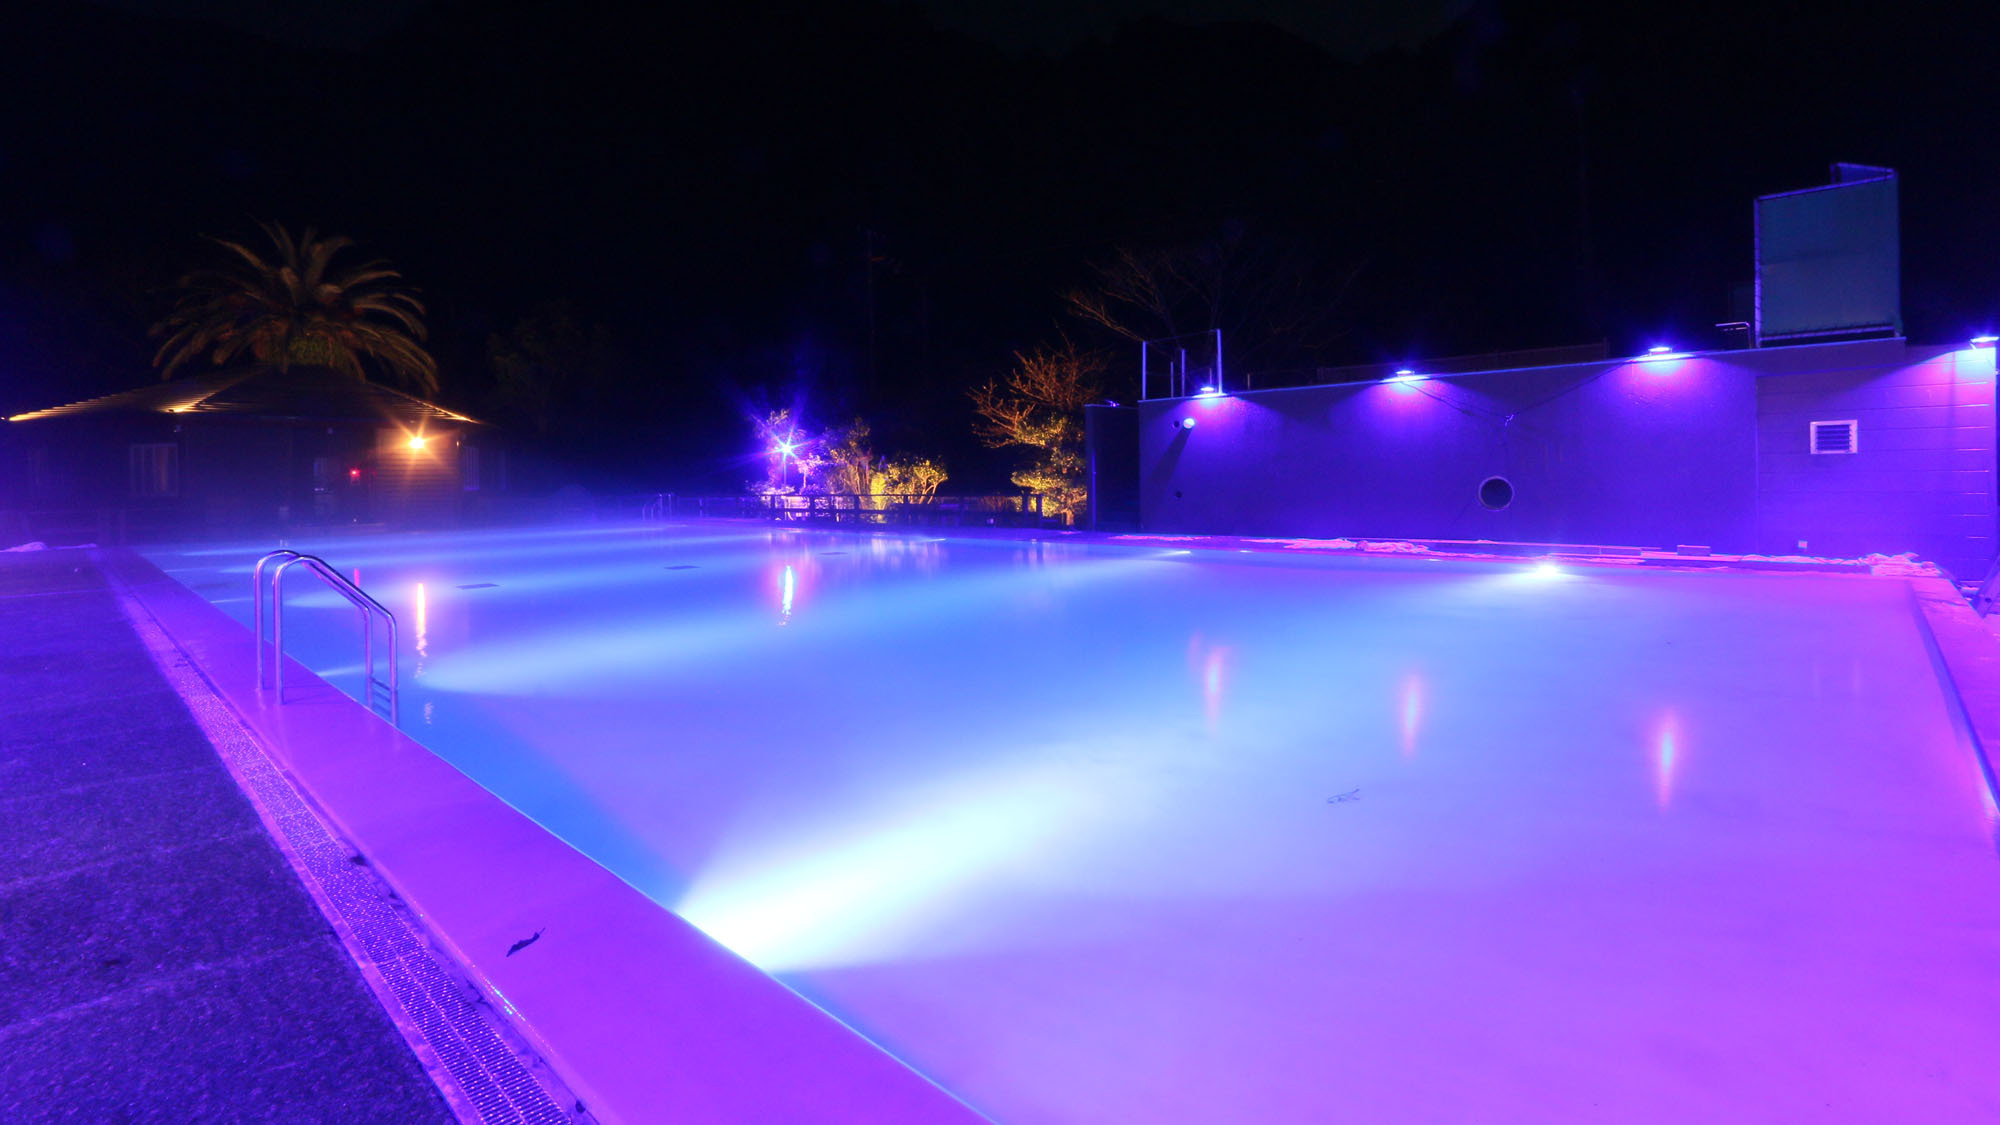 ナイトプール -Night pool-ライトアップにより浮かび上がるプールのフォルム